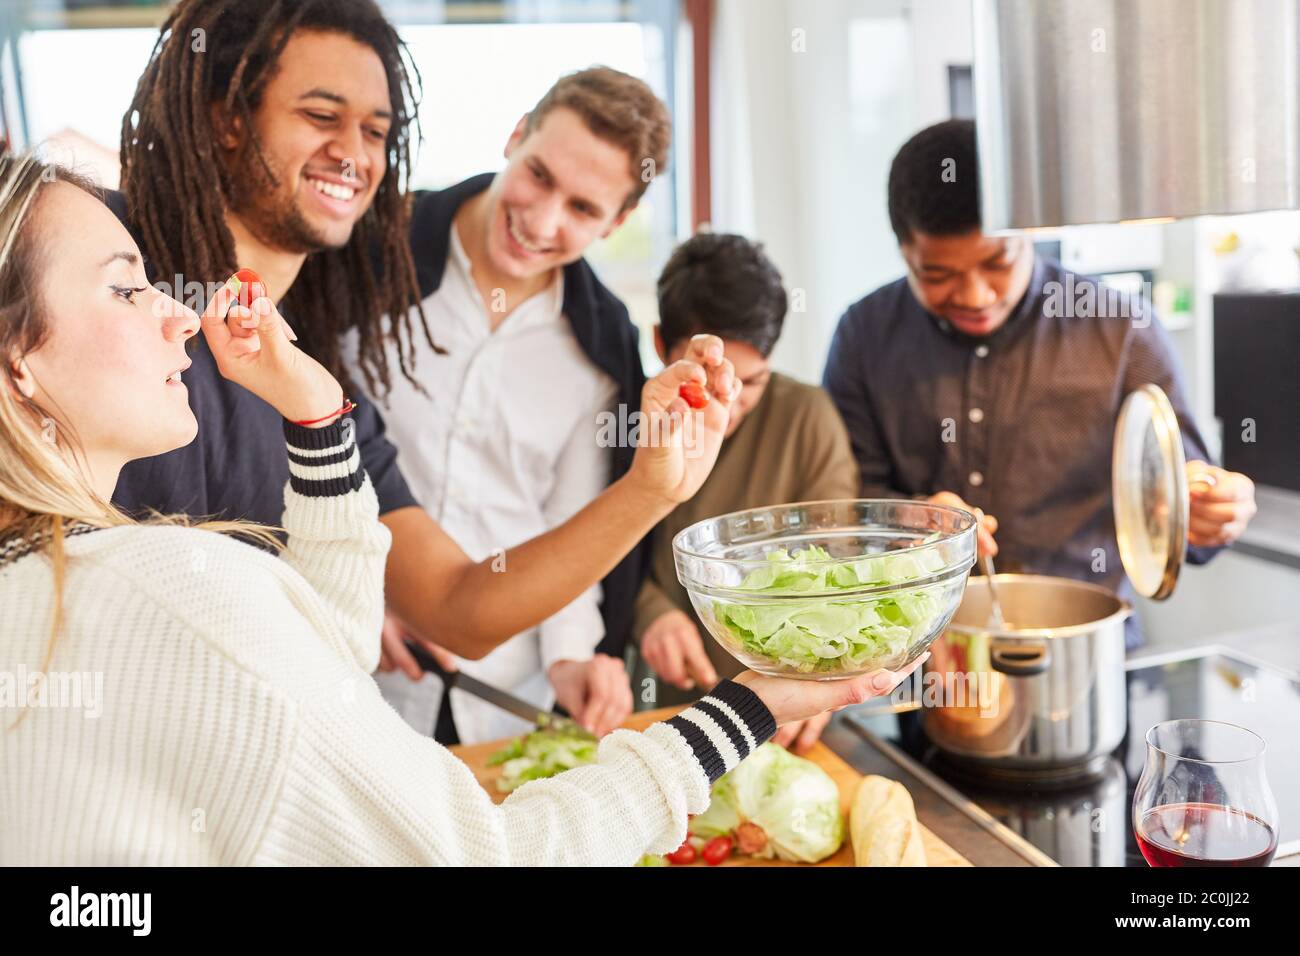 Lachende Studenten bereiten gemeinsam in einer Gemeinschaftsküche Salat zu Stockfoto